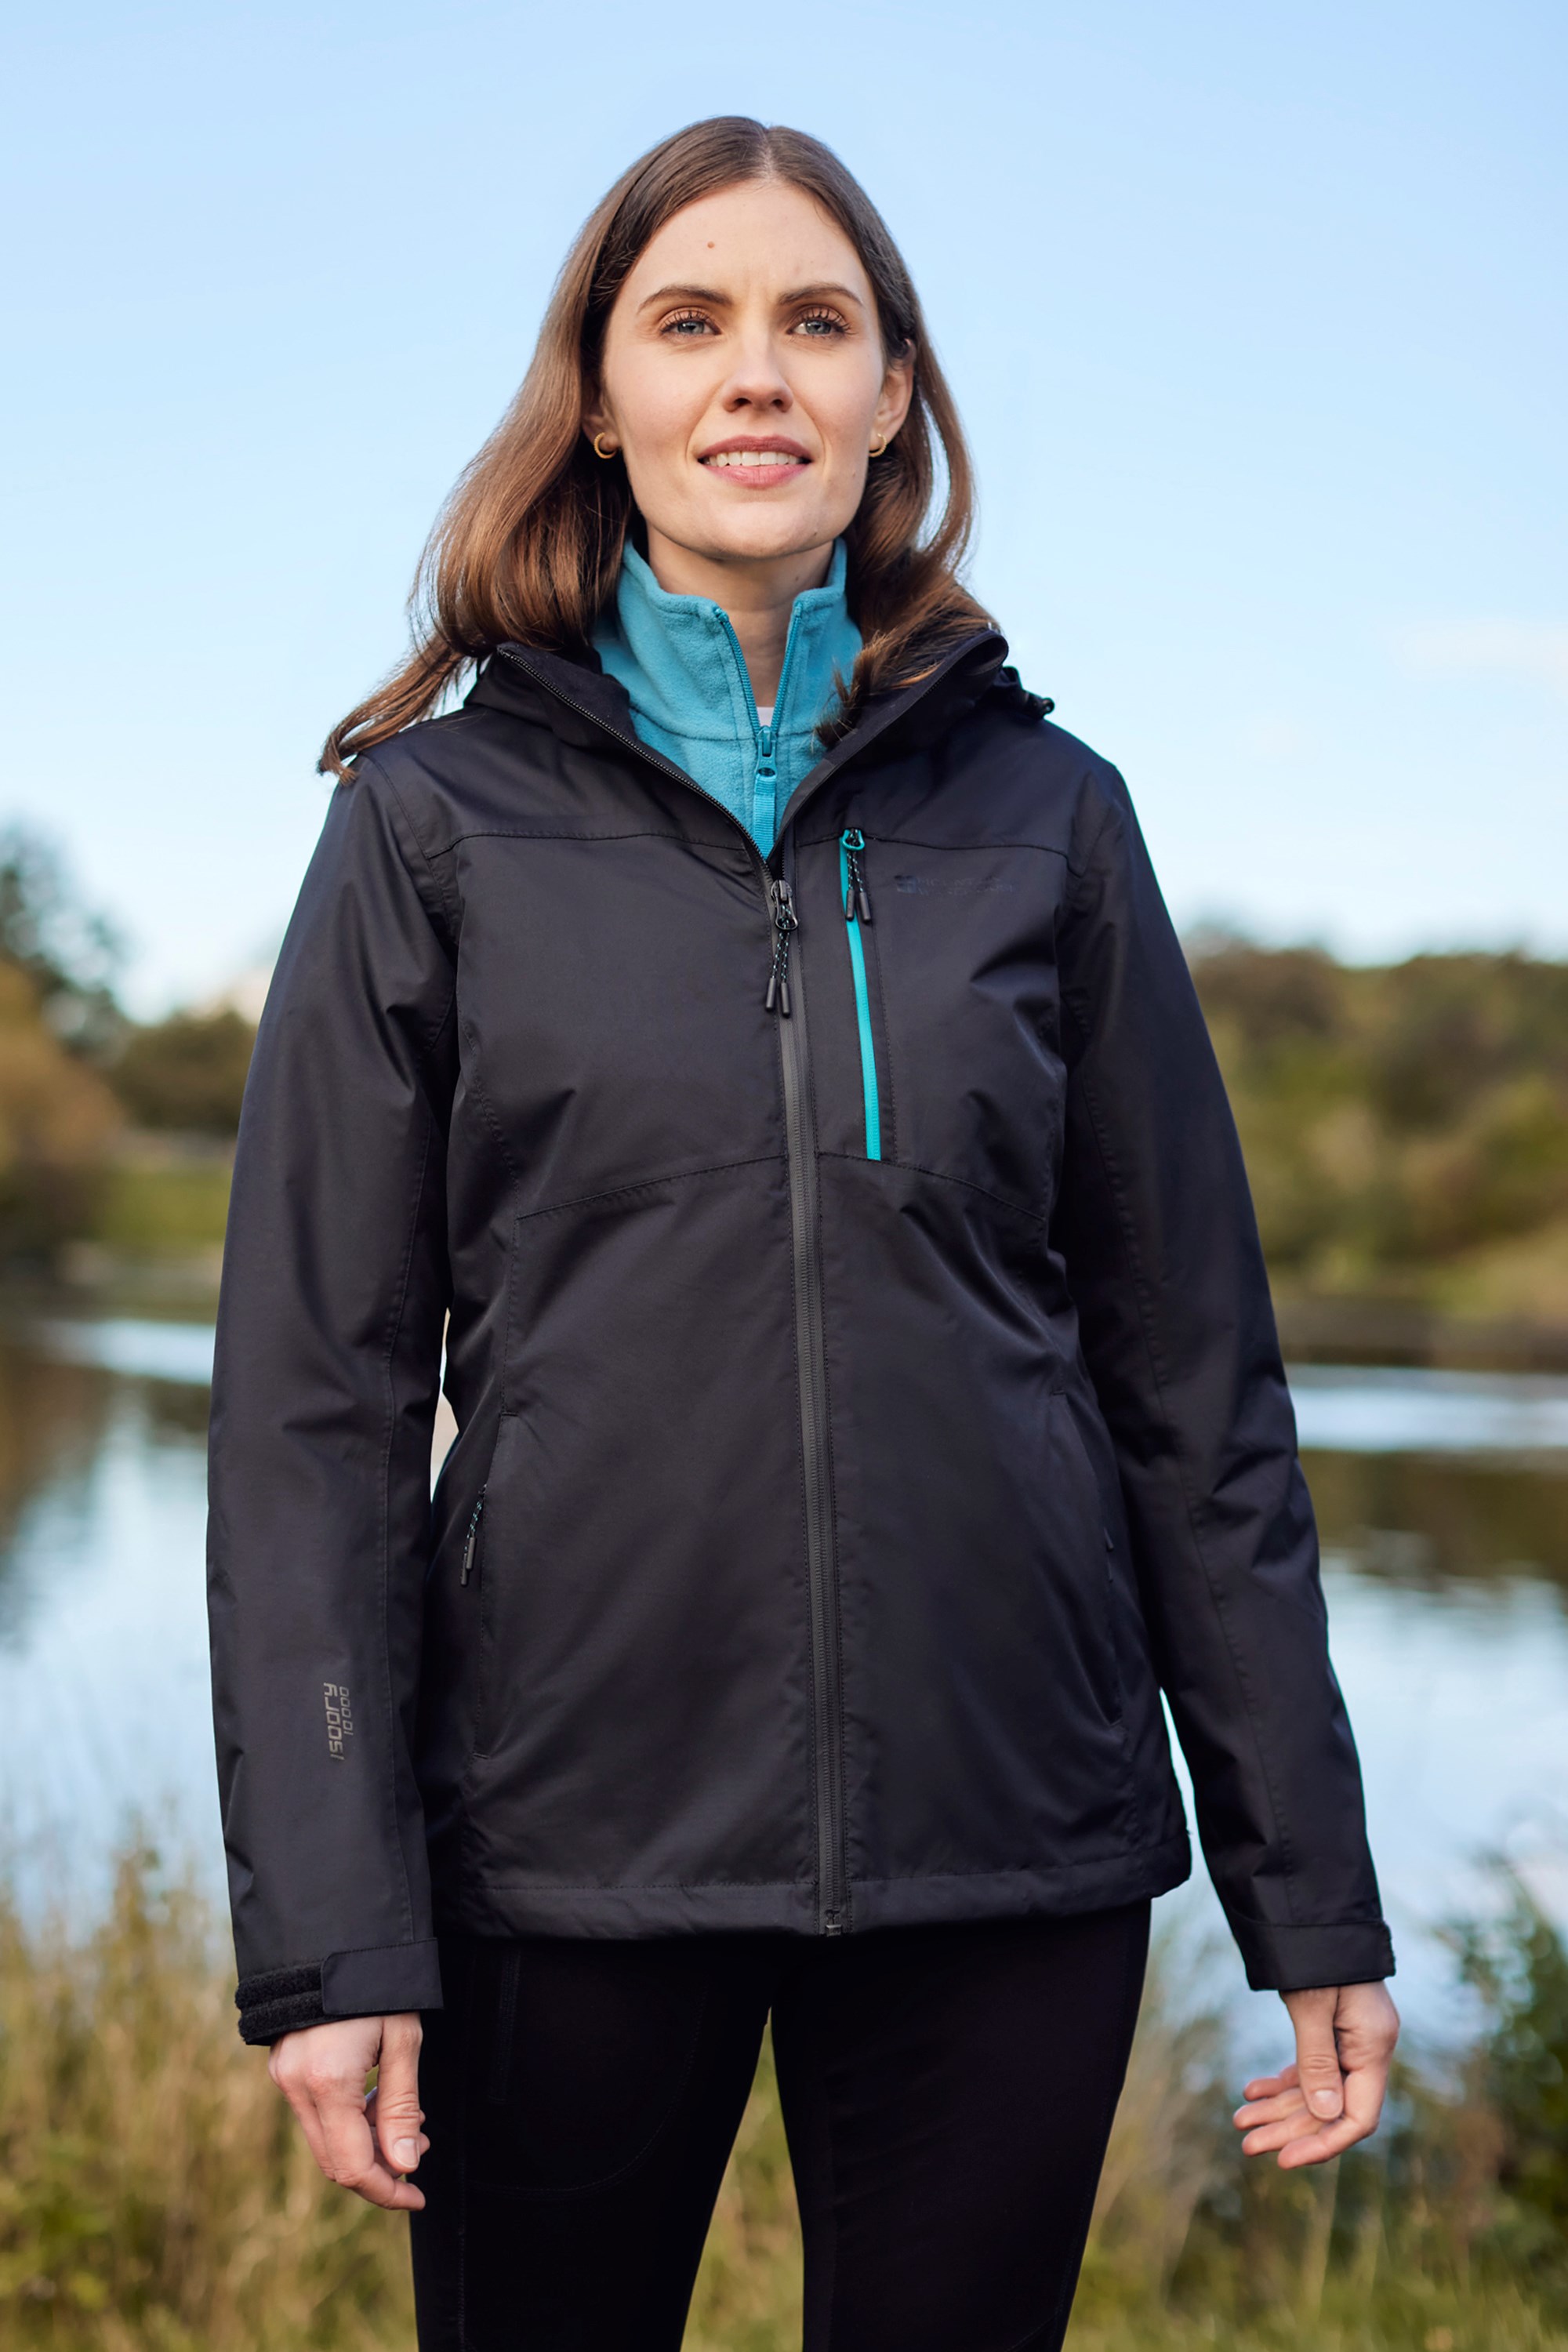 Buy Women's Hiking Warm Waterproof Jacket X Warm Online | Decathlon